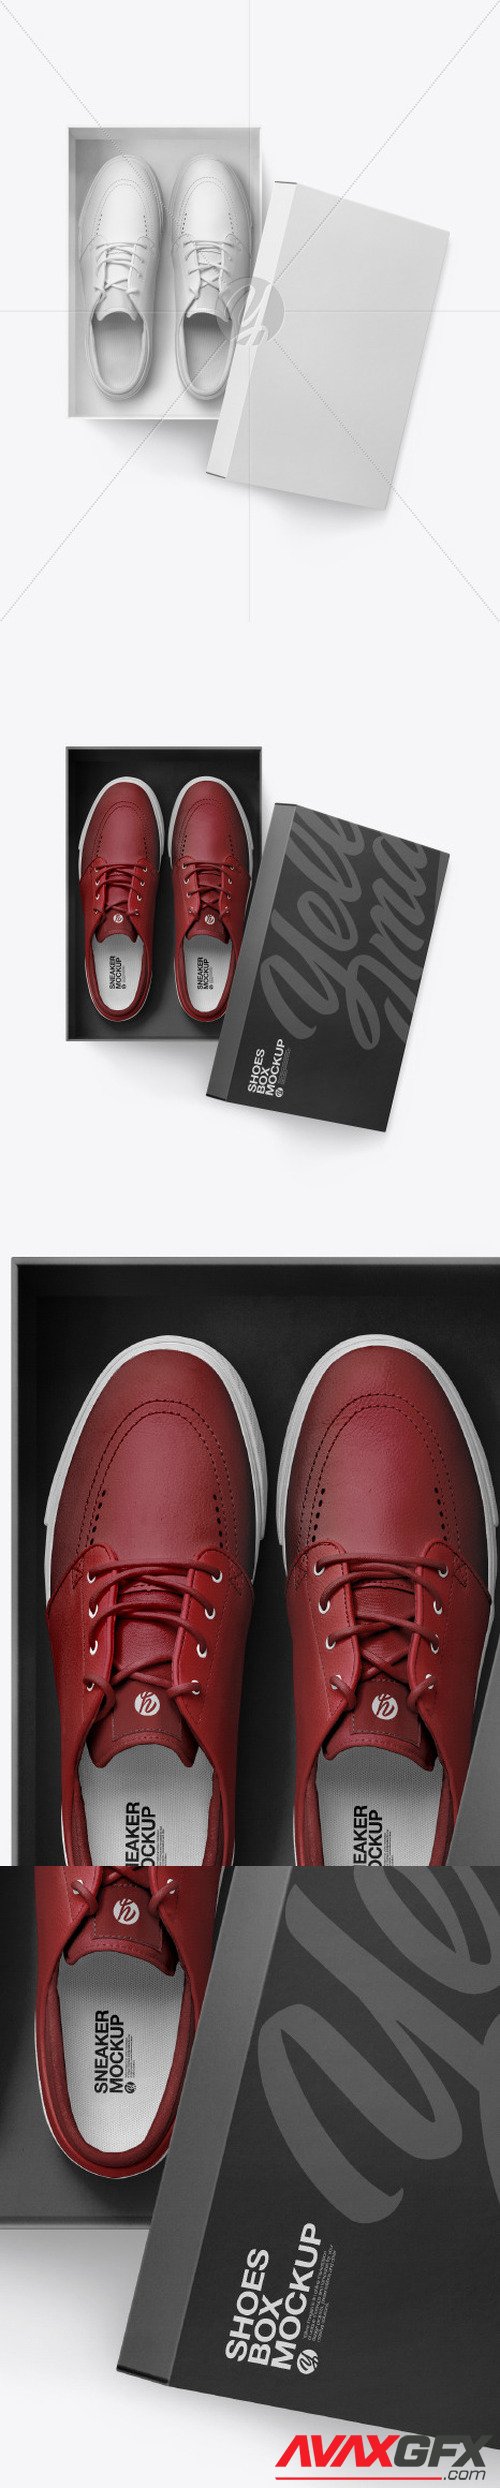 Sneakers Shoes w/ Box Mockup 60995 [TIF]